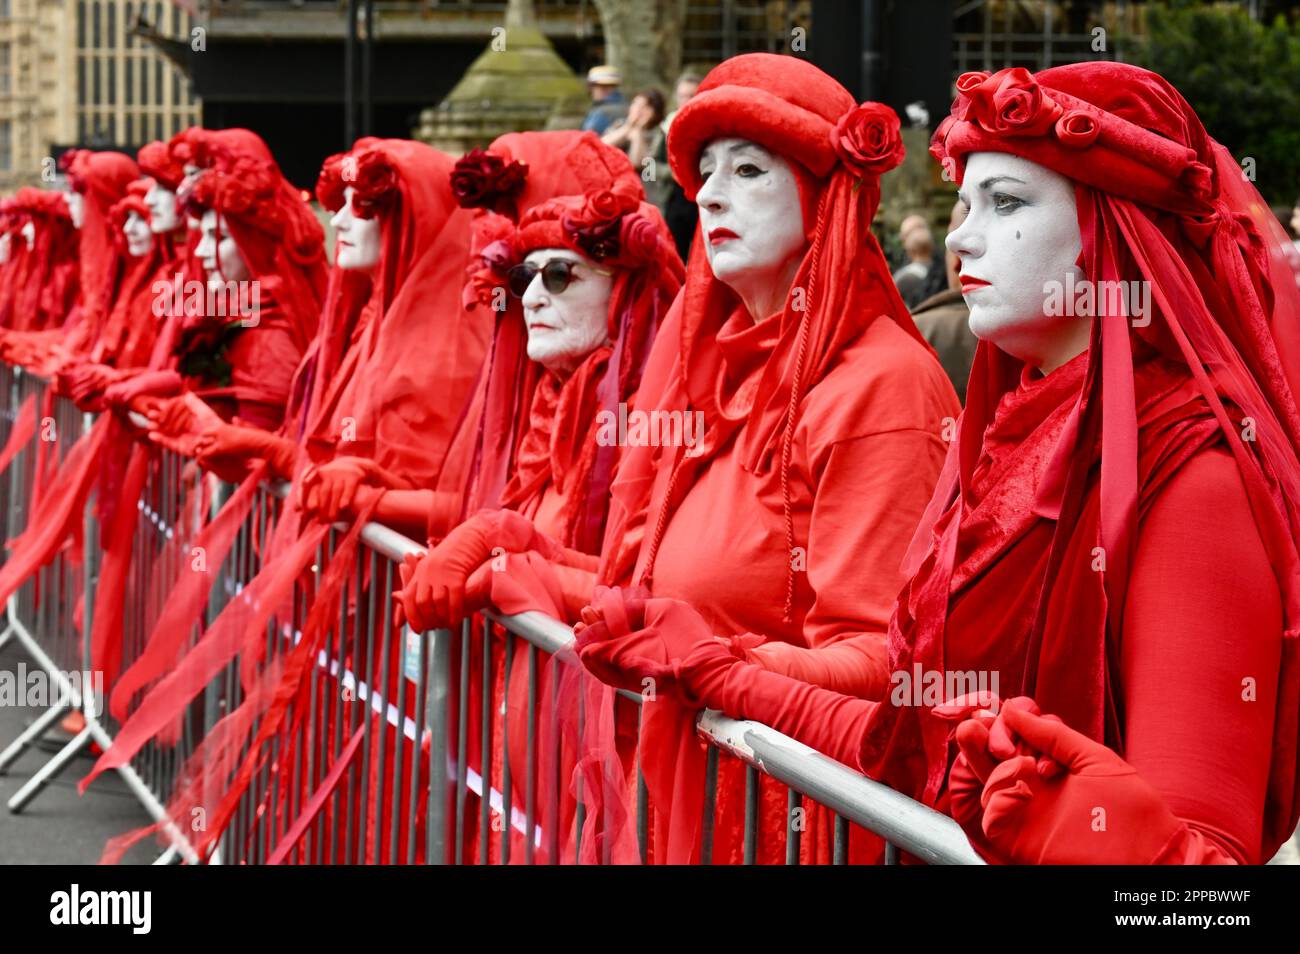 Les rebelles rouges, la rébellion de l'extinction protestation climatique, jour de la Terre, chambres du Parlement, Westminster, Londres, ROYAUME-UNI Banque D'Images